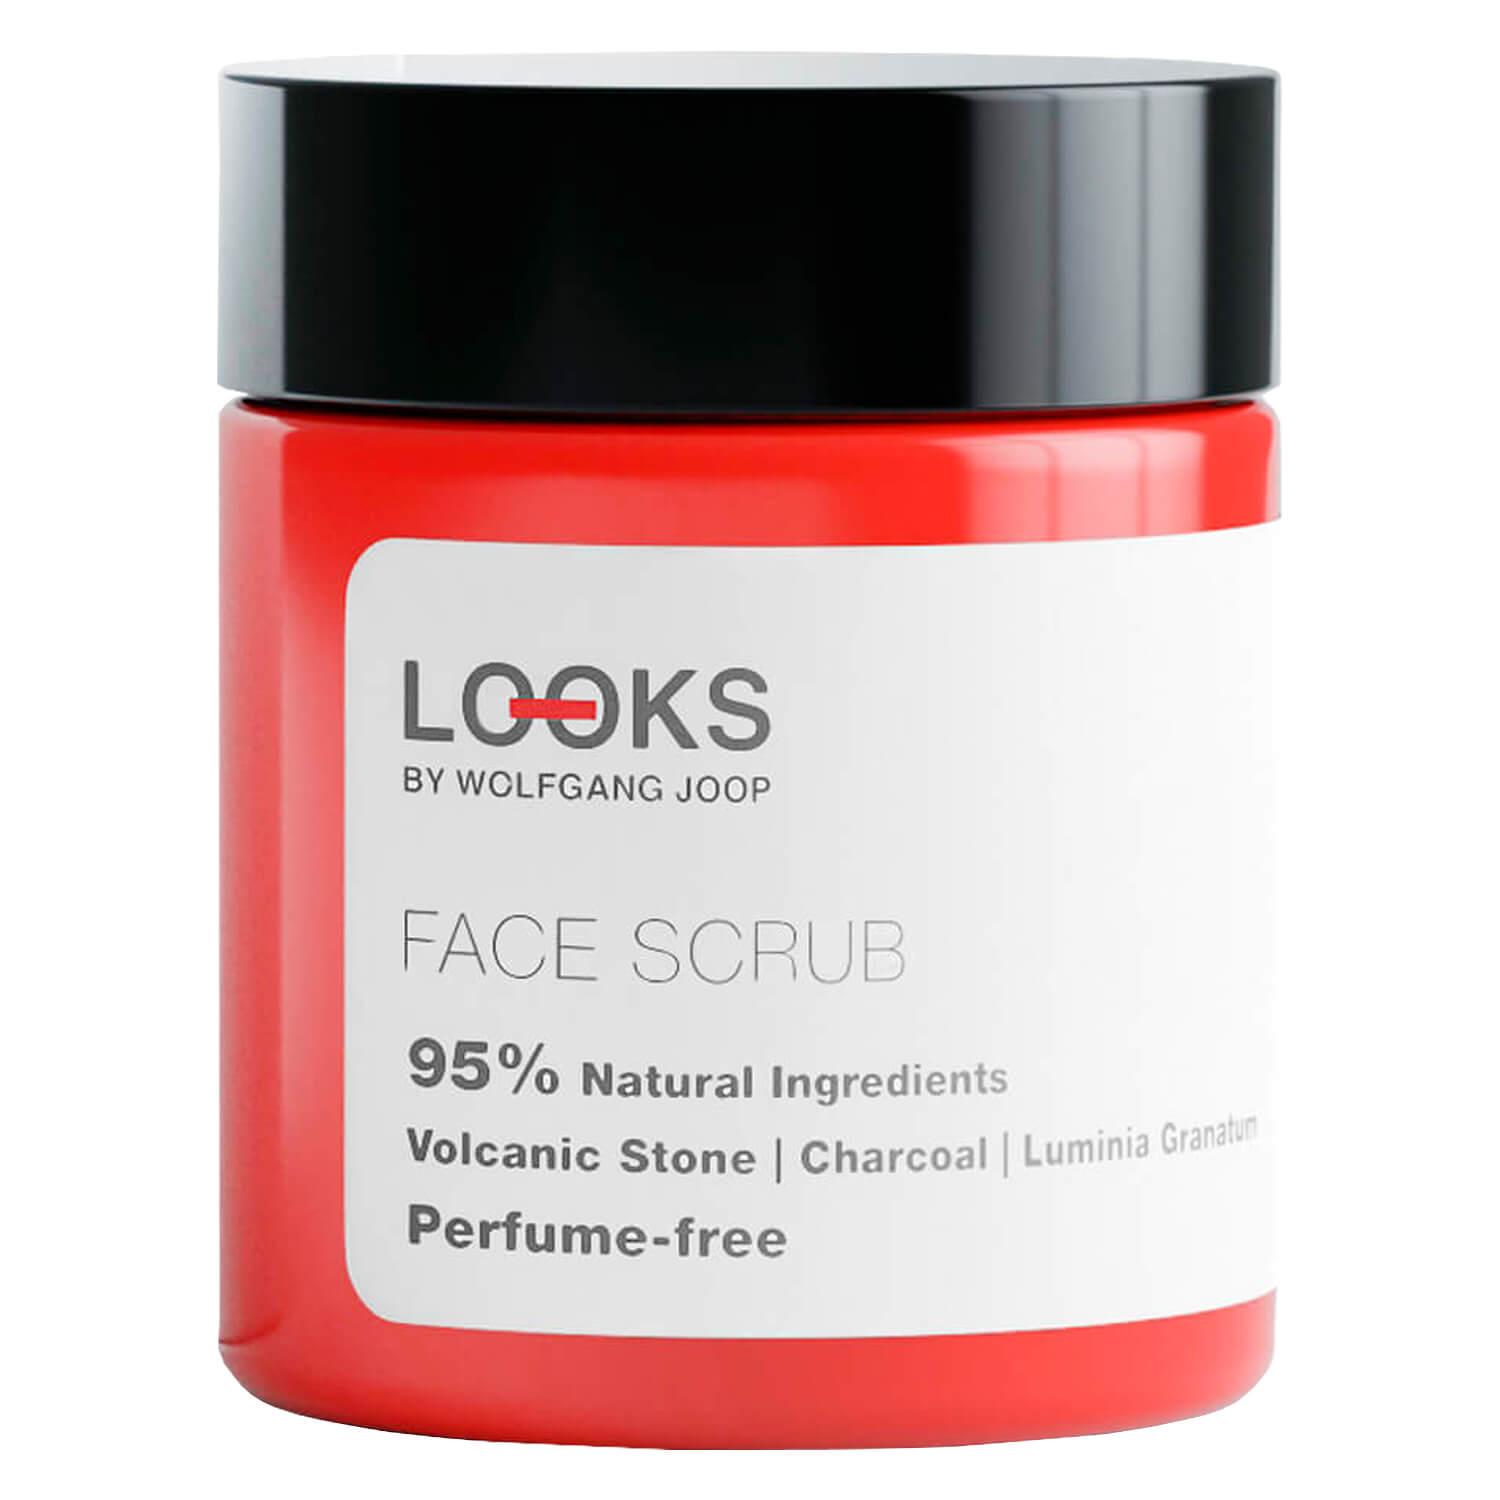 LOOKS Skincare - Face Scrub